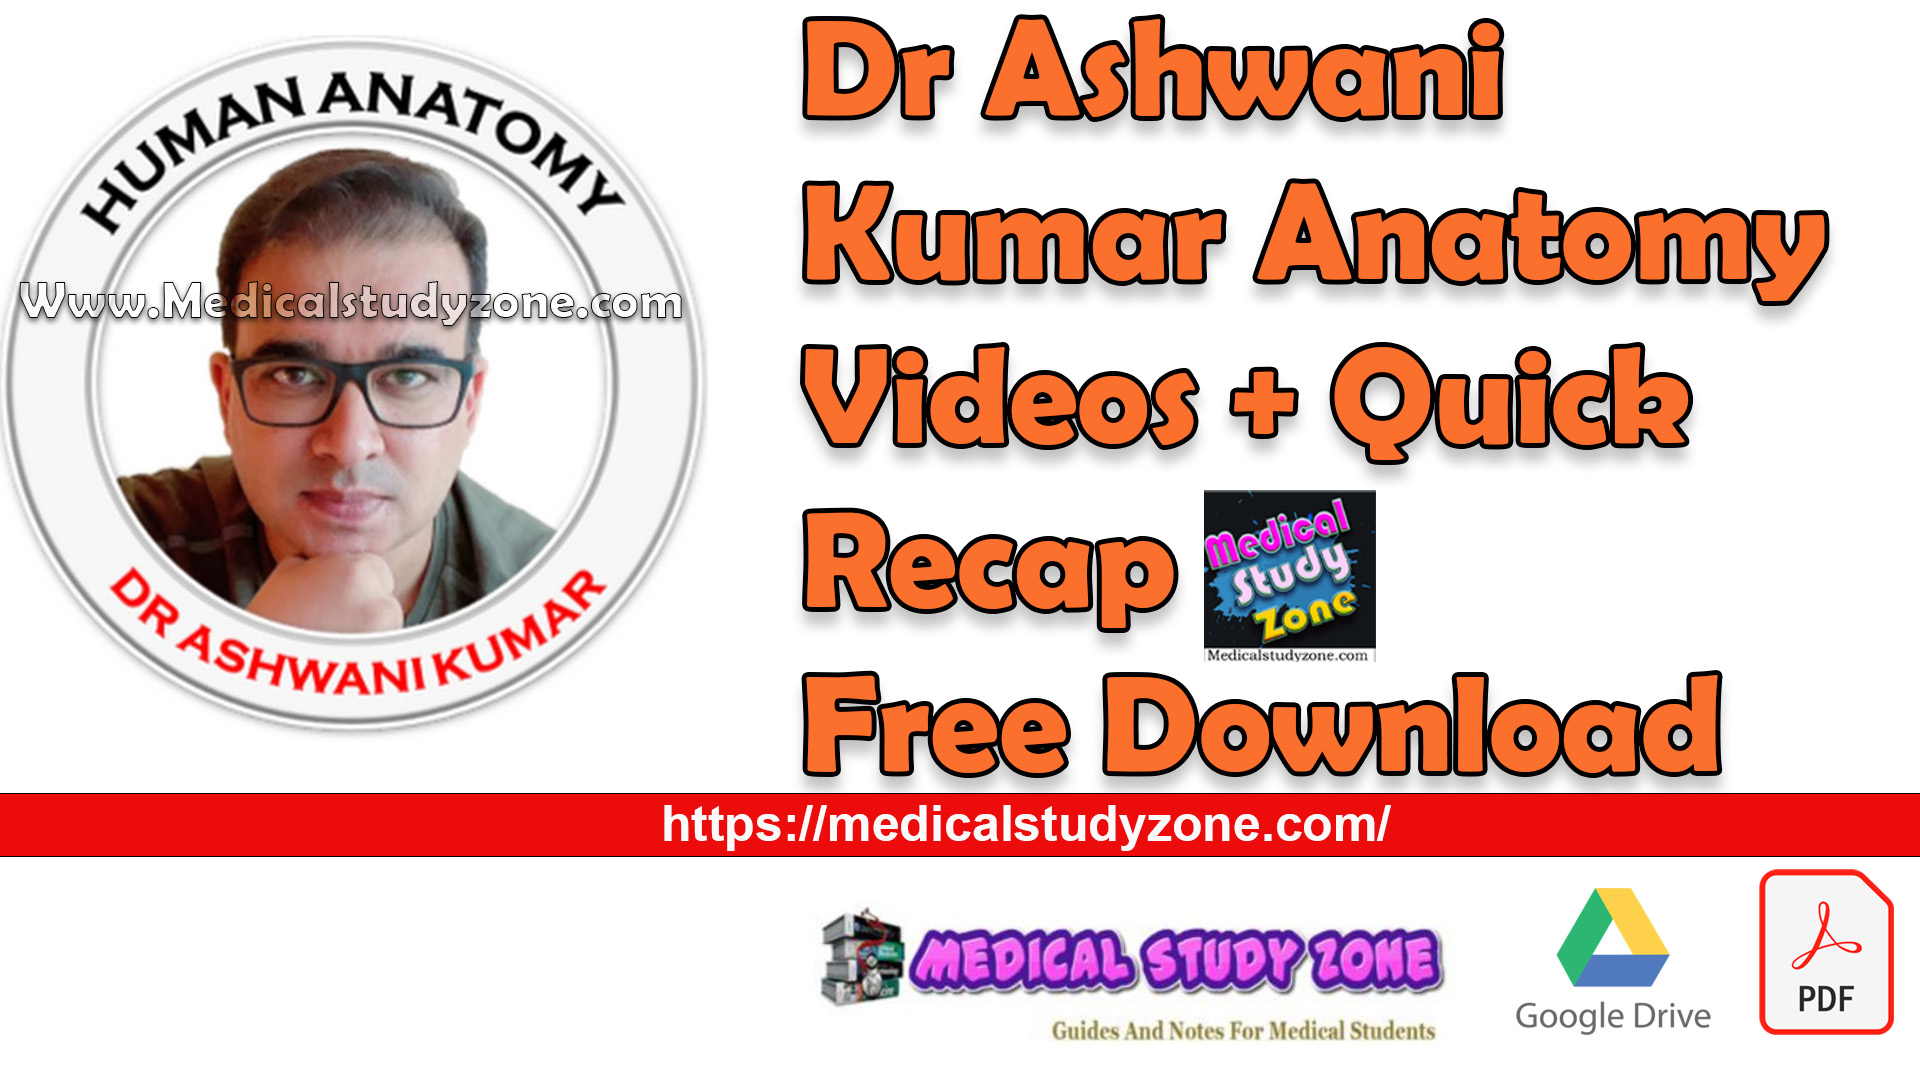 Dr Ashwani Kumar Anatomy Videos + Quick Recap Free Download